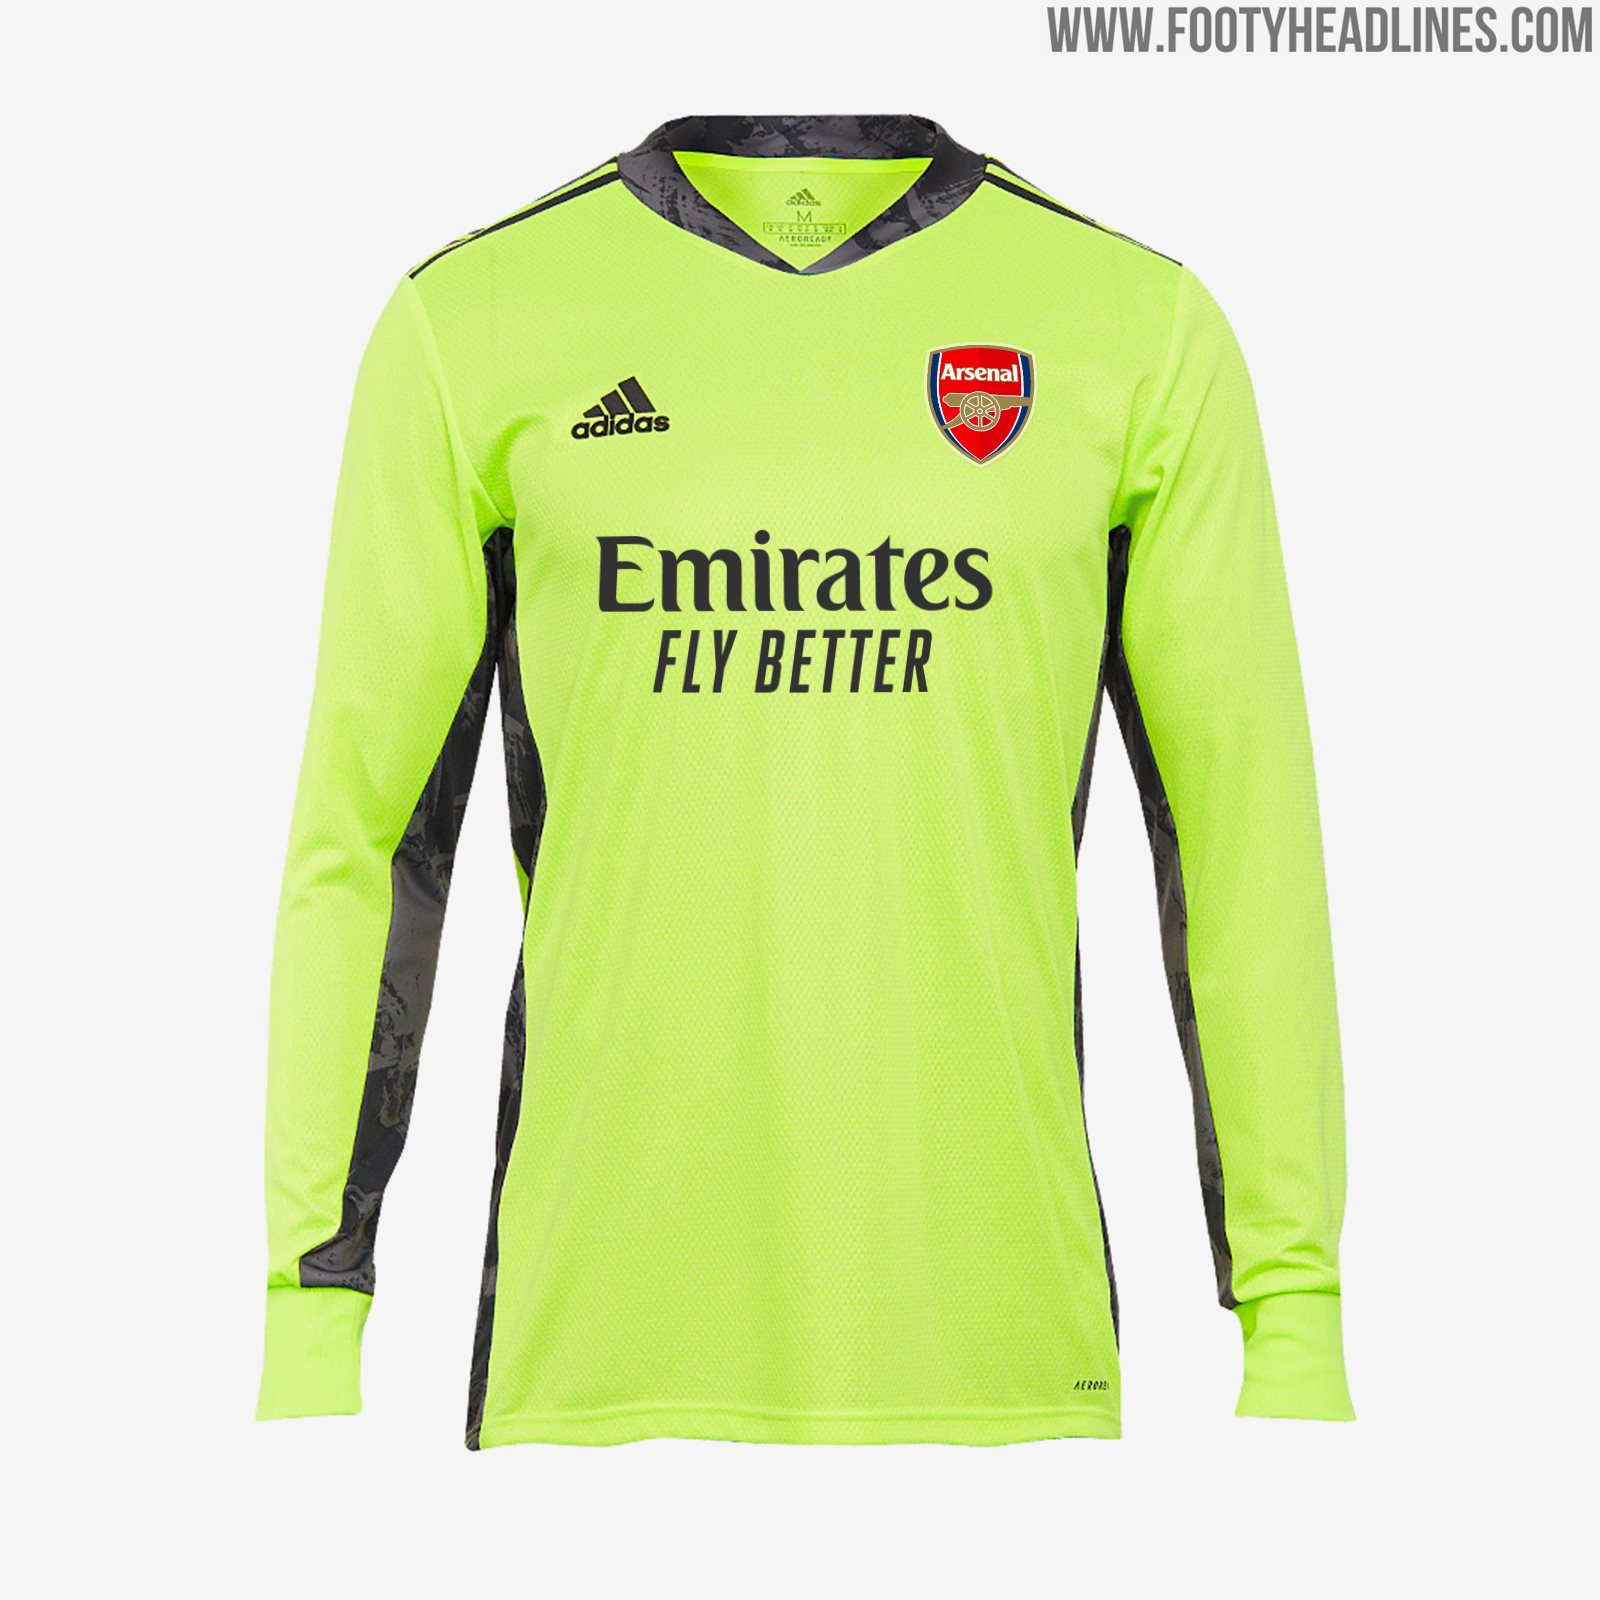 arsenal away goalkeeper kit